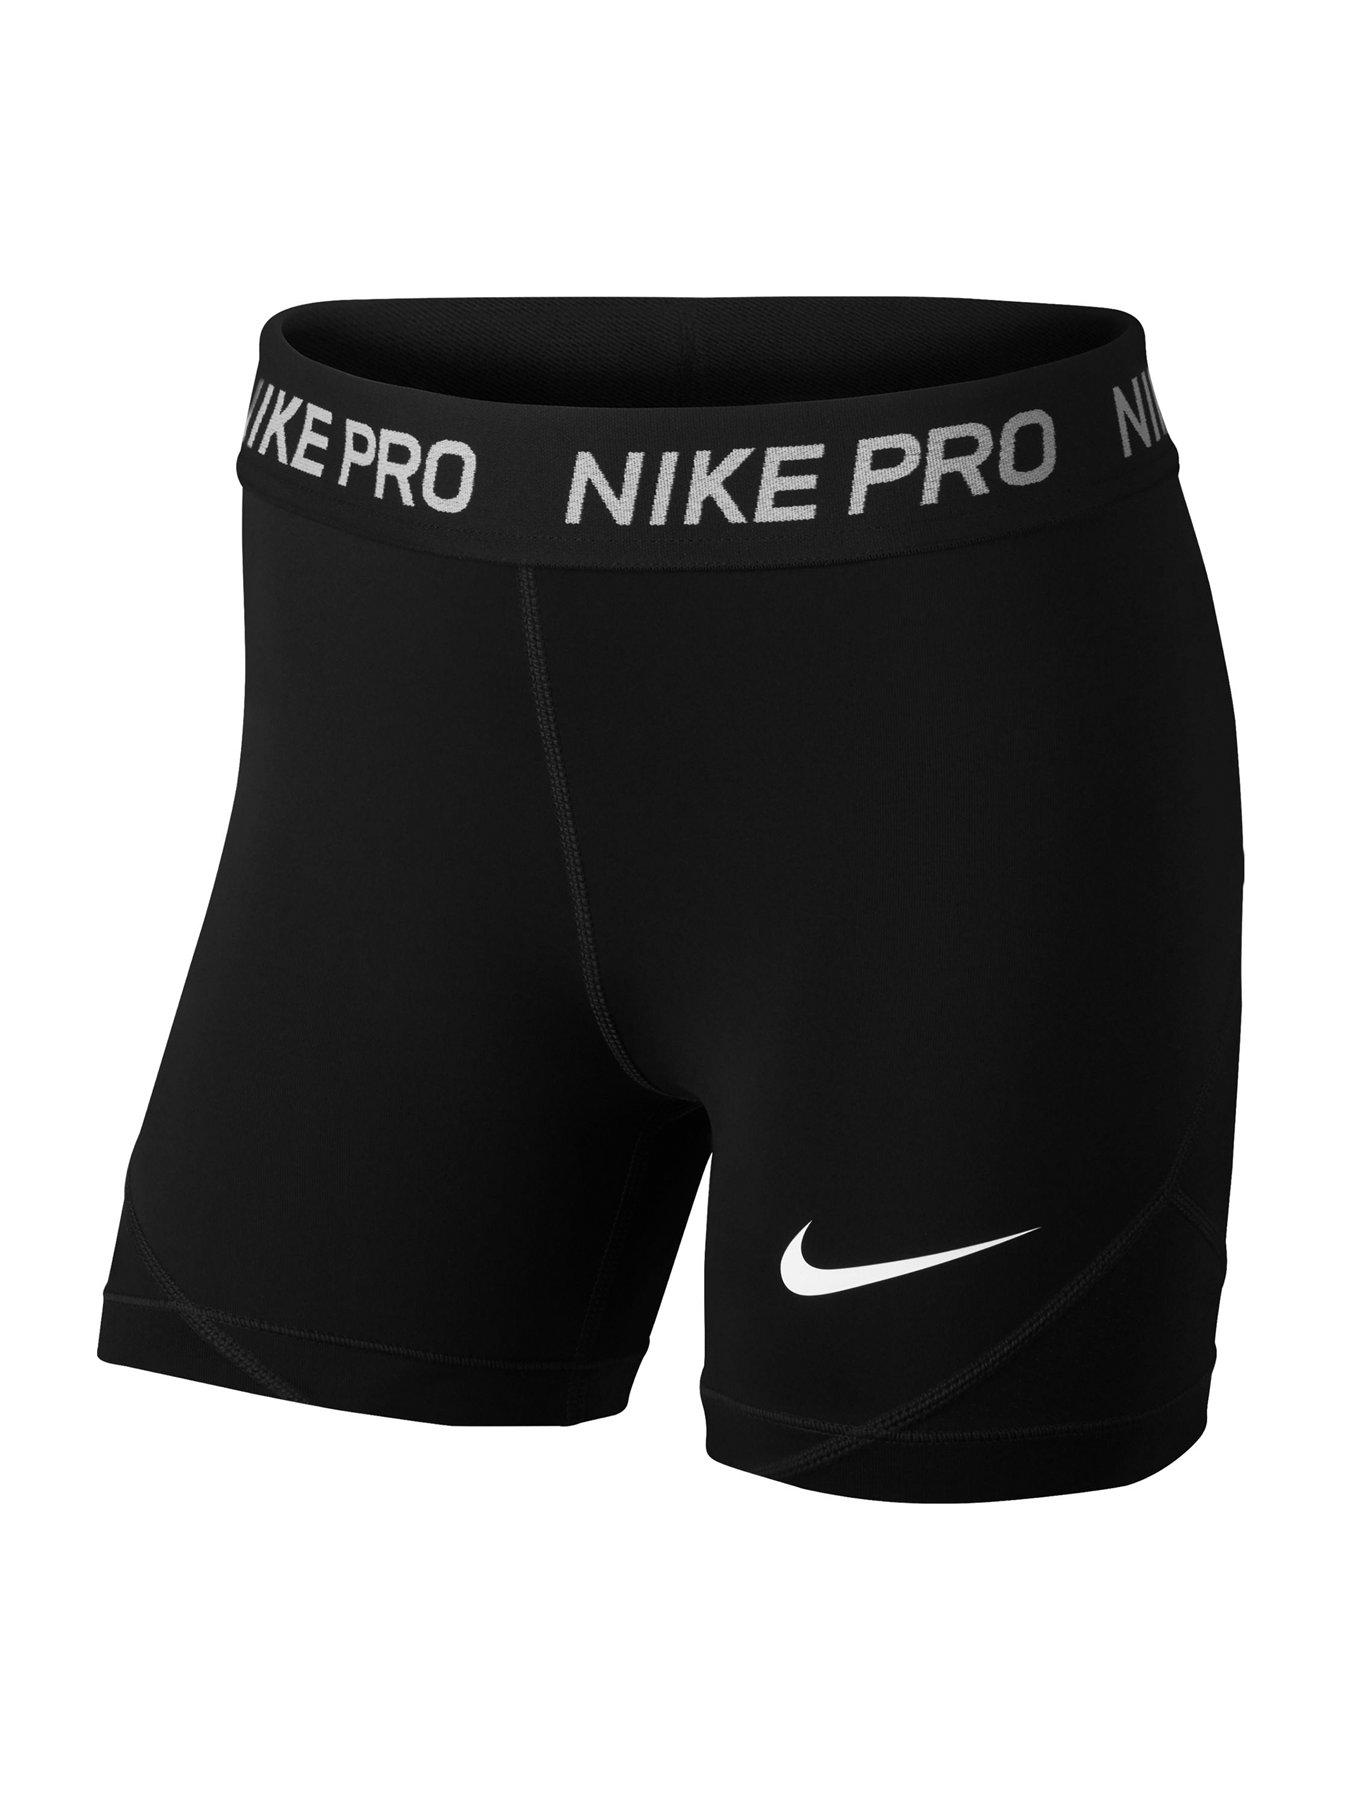 used nike pro shorts